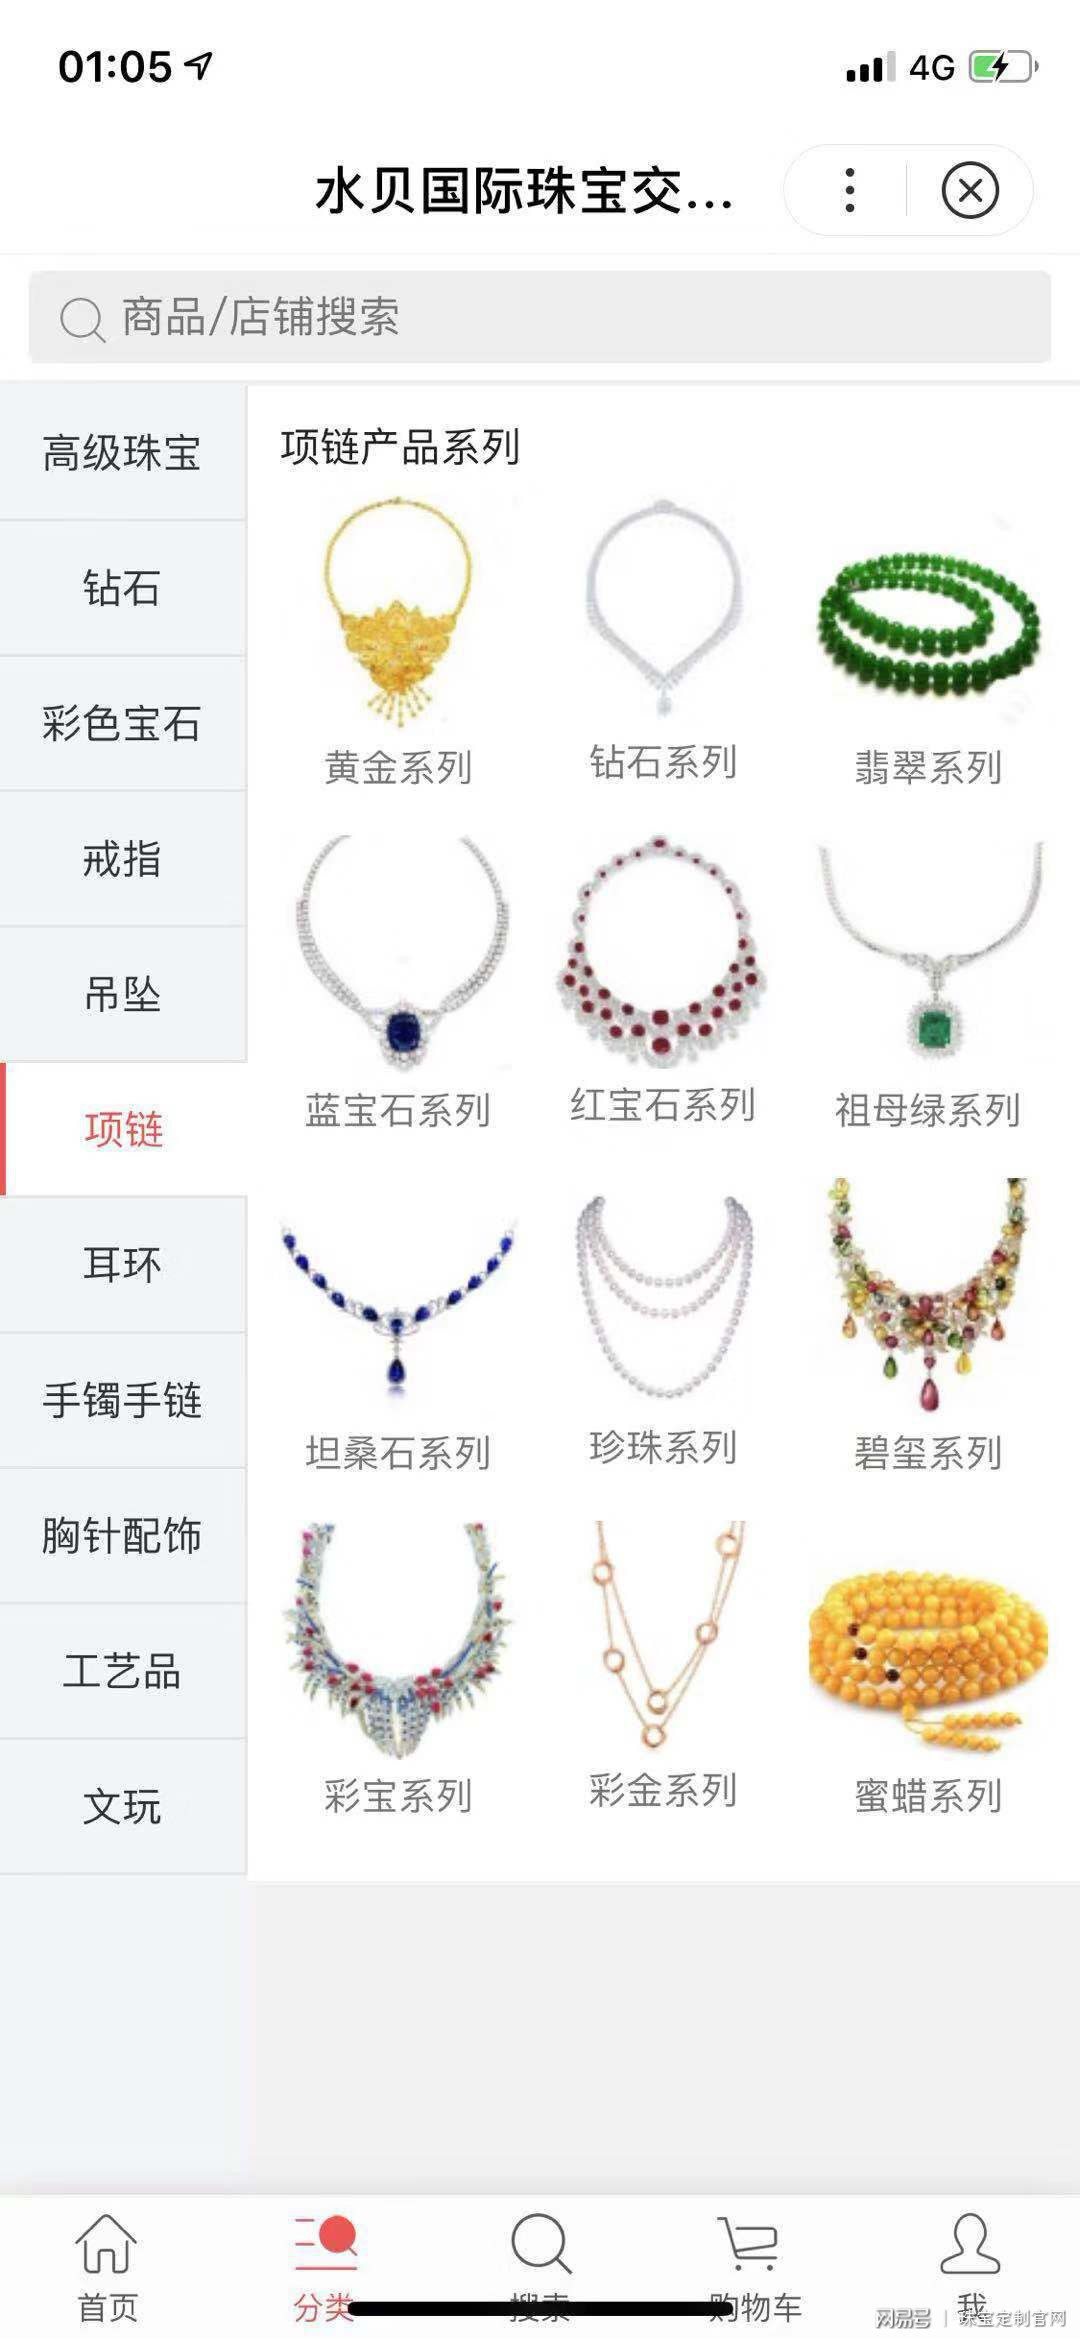 珠宝交易所(广州华林街玉器市场的产品)